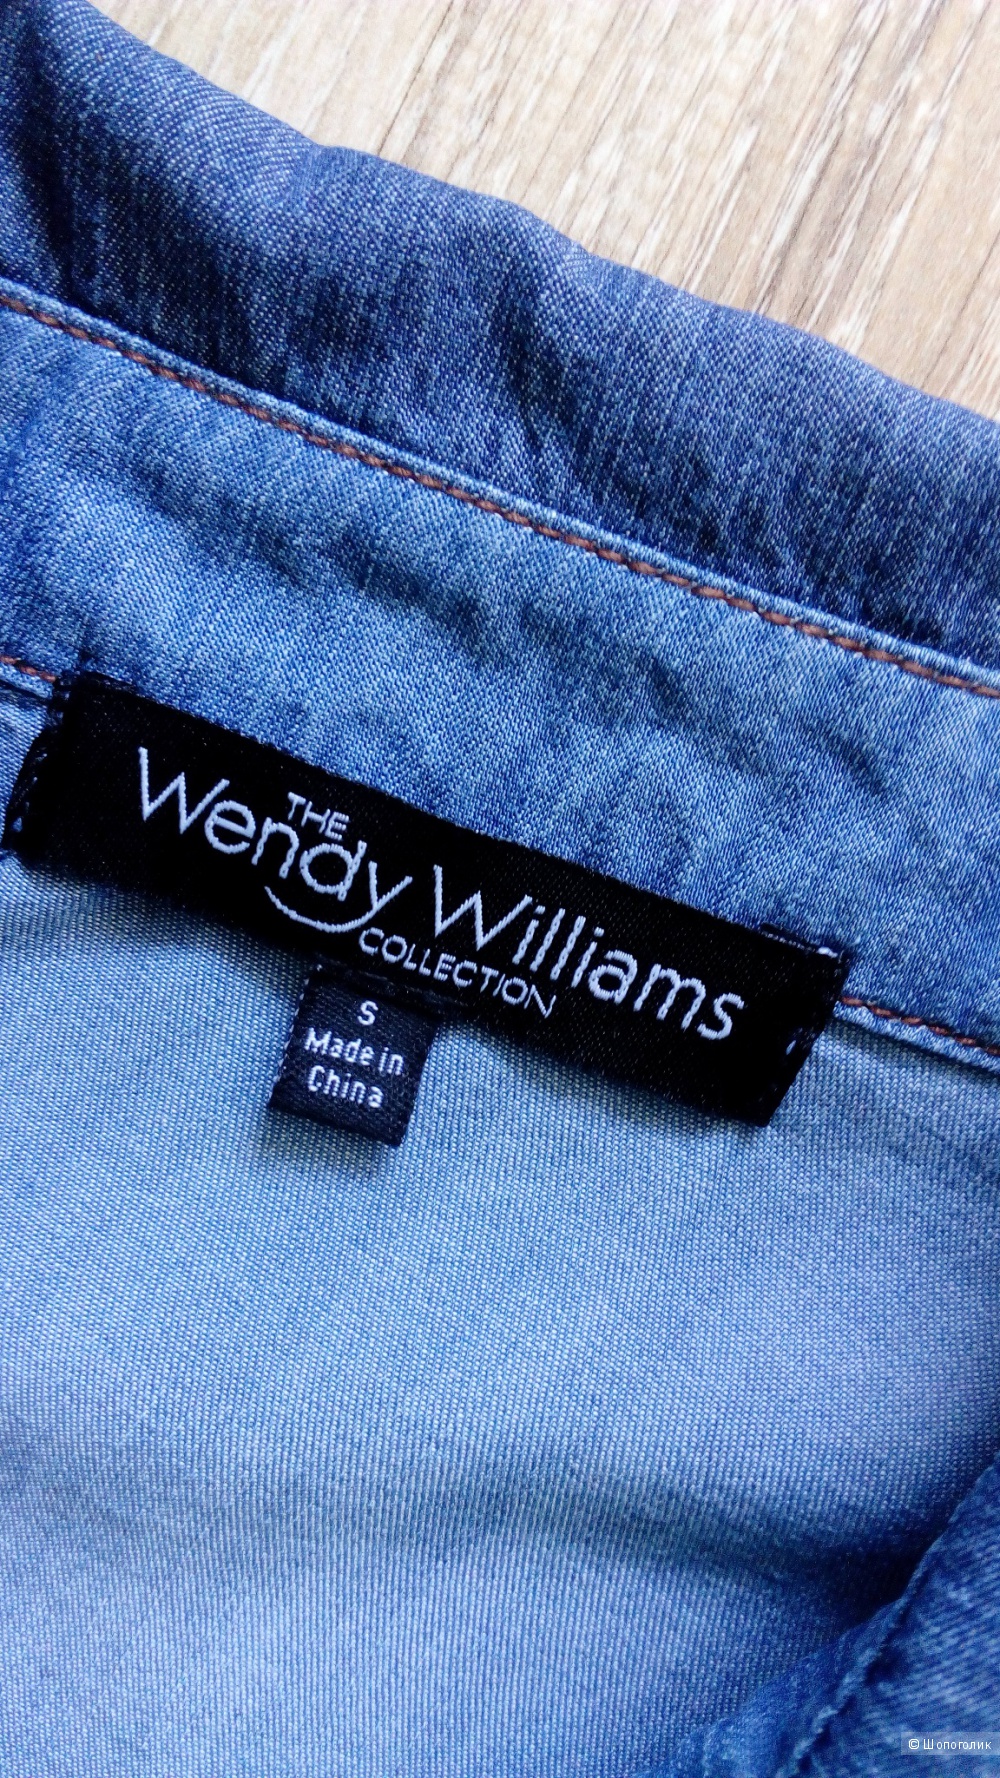 Рубашка Wendy Williams collection, размер S